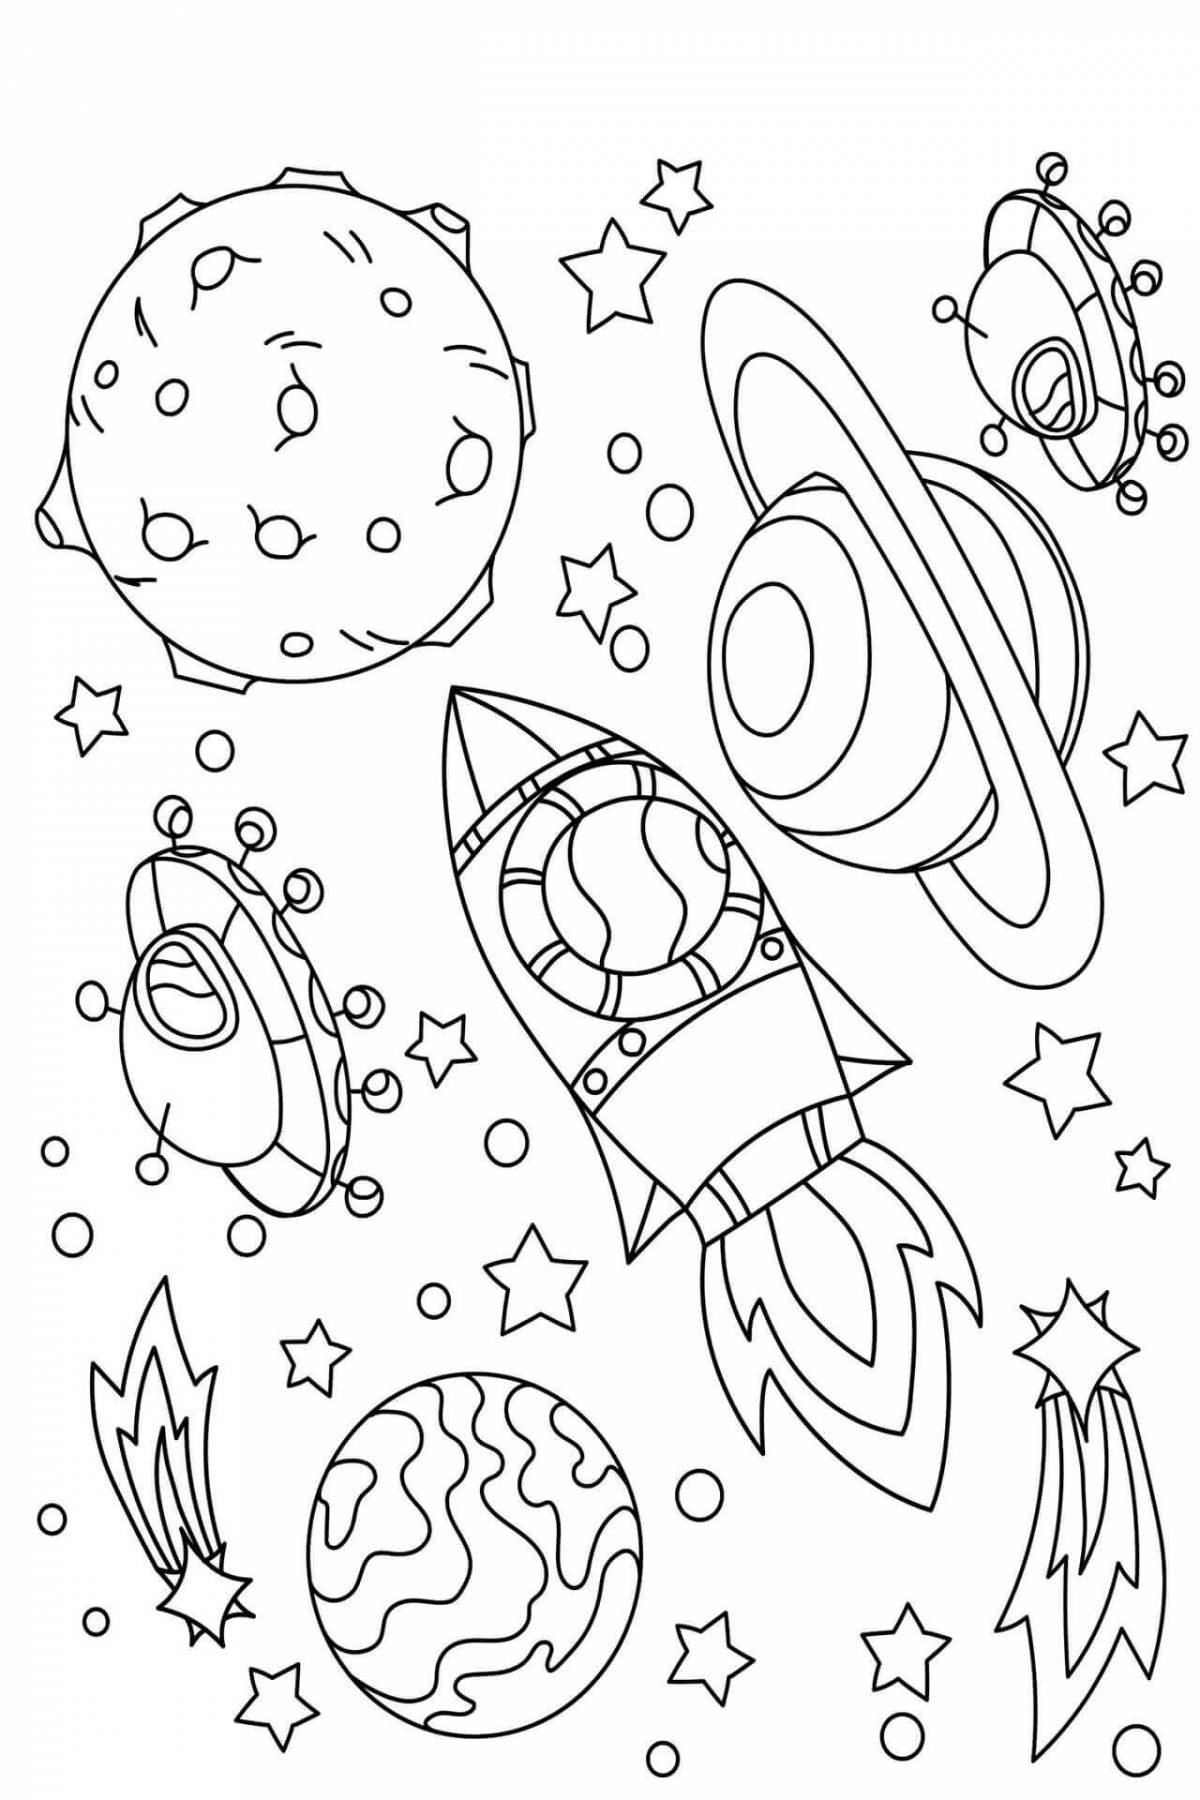 Раскраска космос 5 лет. Космос раскраска для детей. Раскраска космос для детей 6-7 лет. Раскраска. В космосе. Раскраски космос для детей 4-5 лет.